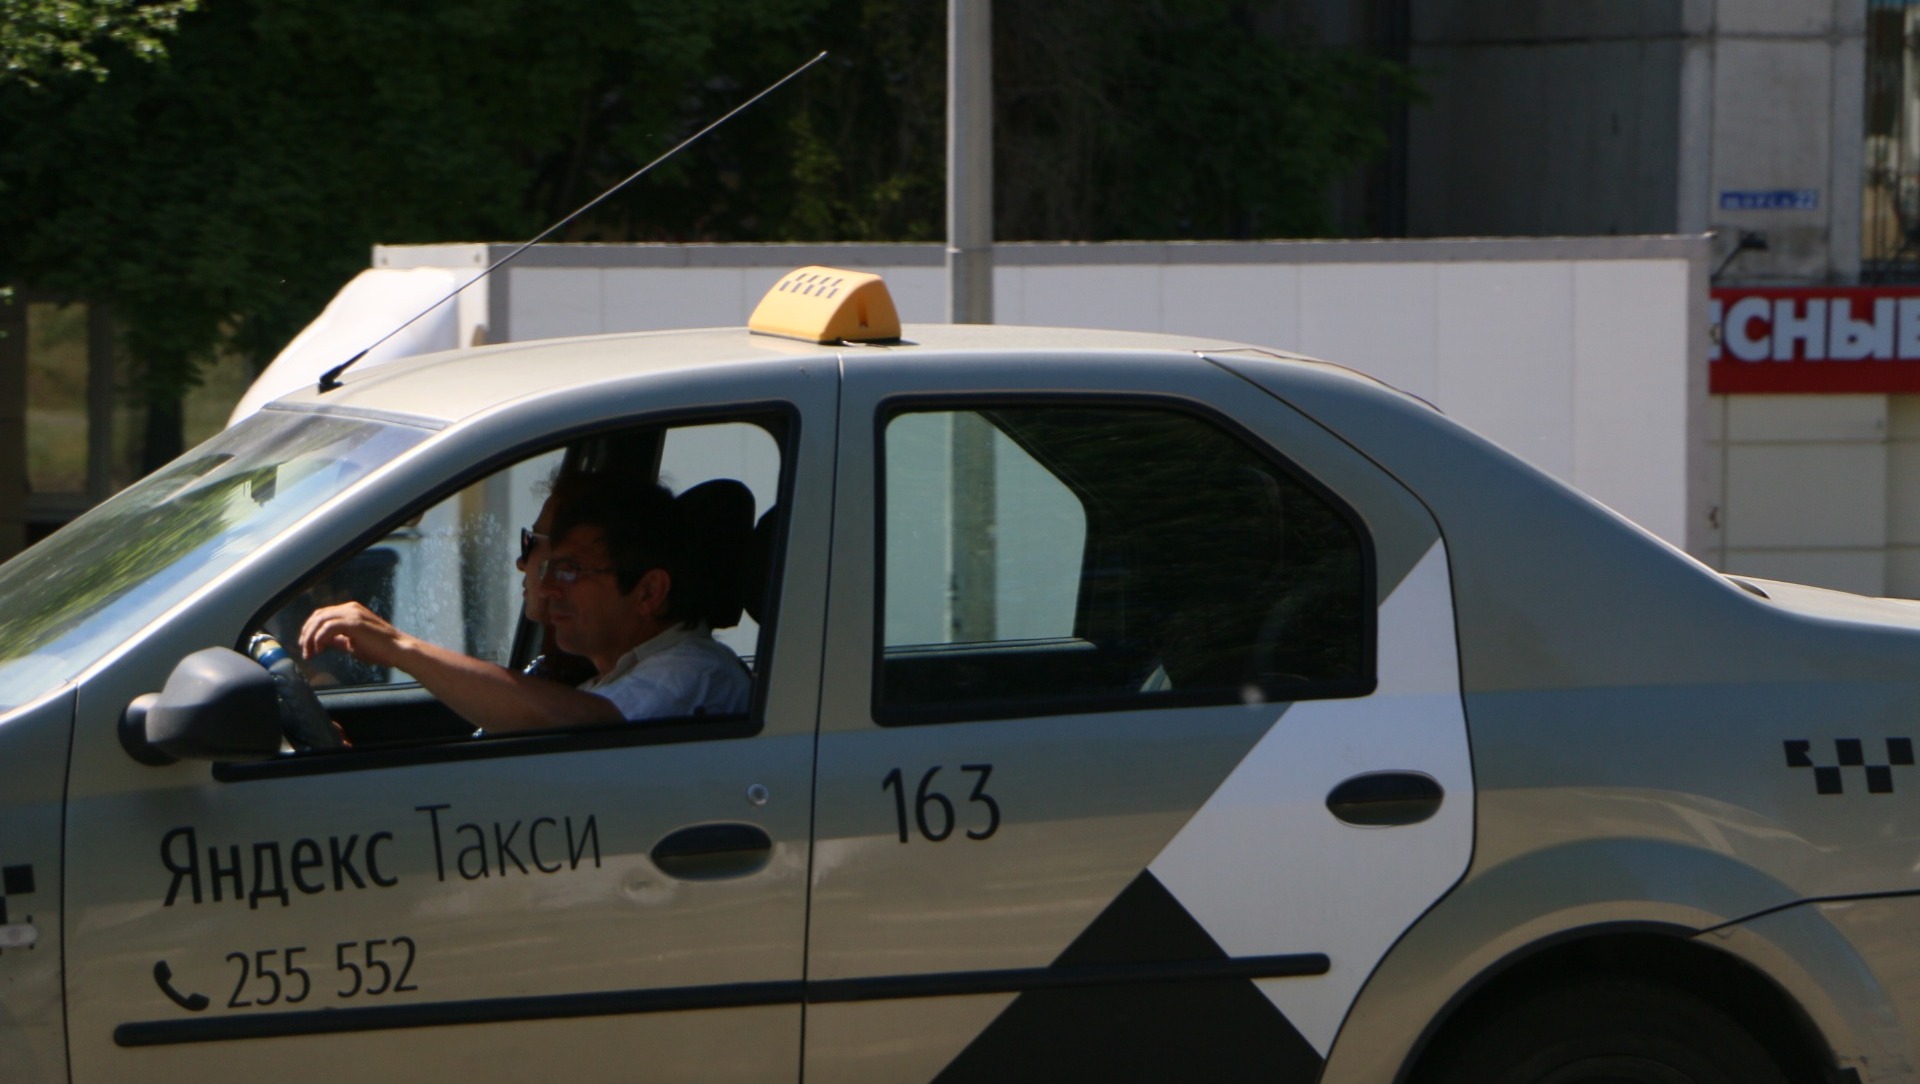 «Это неадекватно!»: почему цены на такси в Краснодаре буквально «взлетели»?